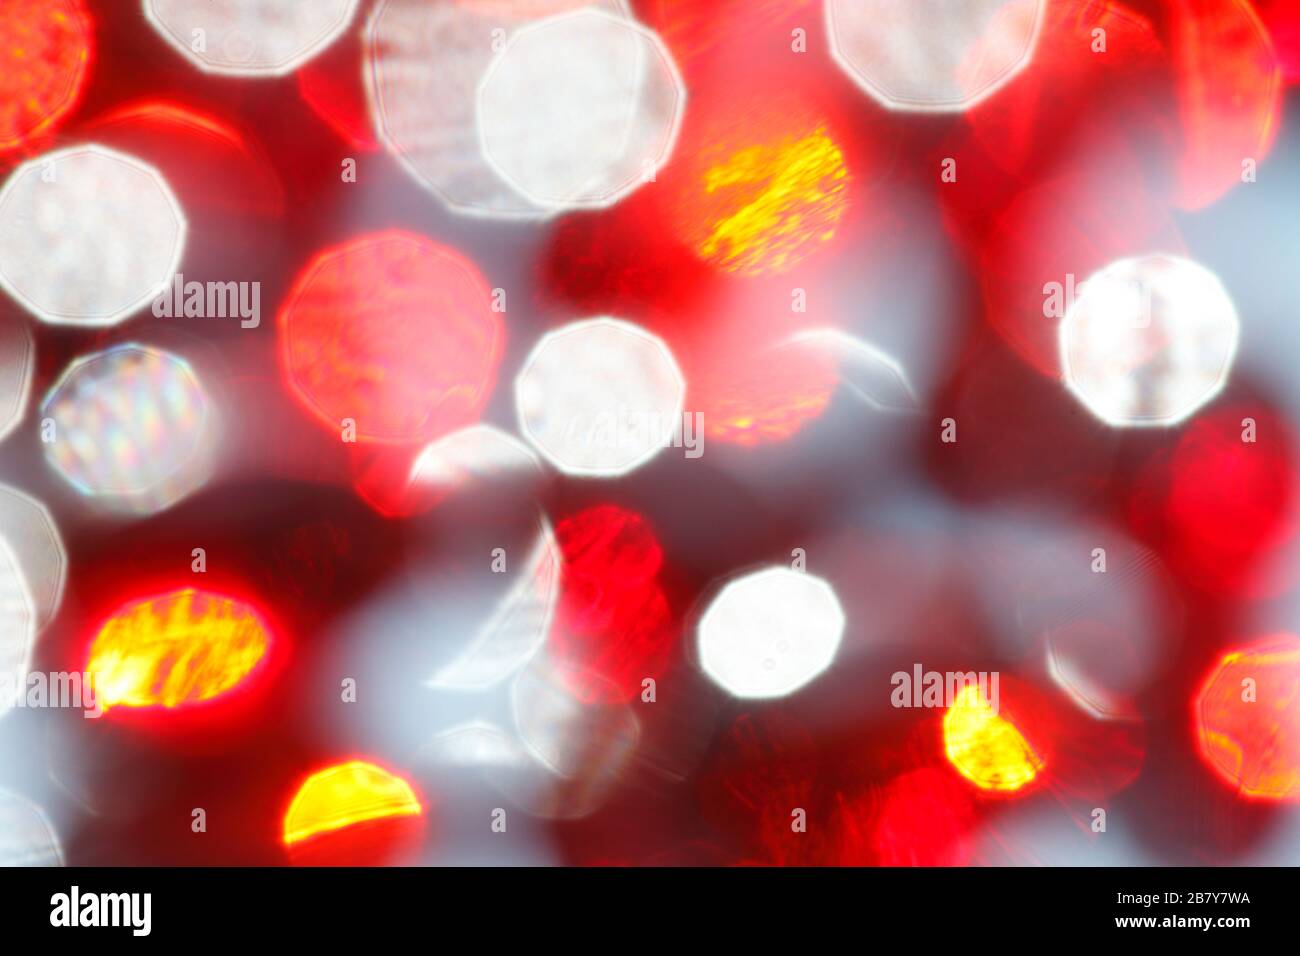 Le motif blanc rouge complexe de lumière et d'ombre produit par les capsules d'huile de krill démoutilisées Banque D'Images